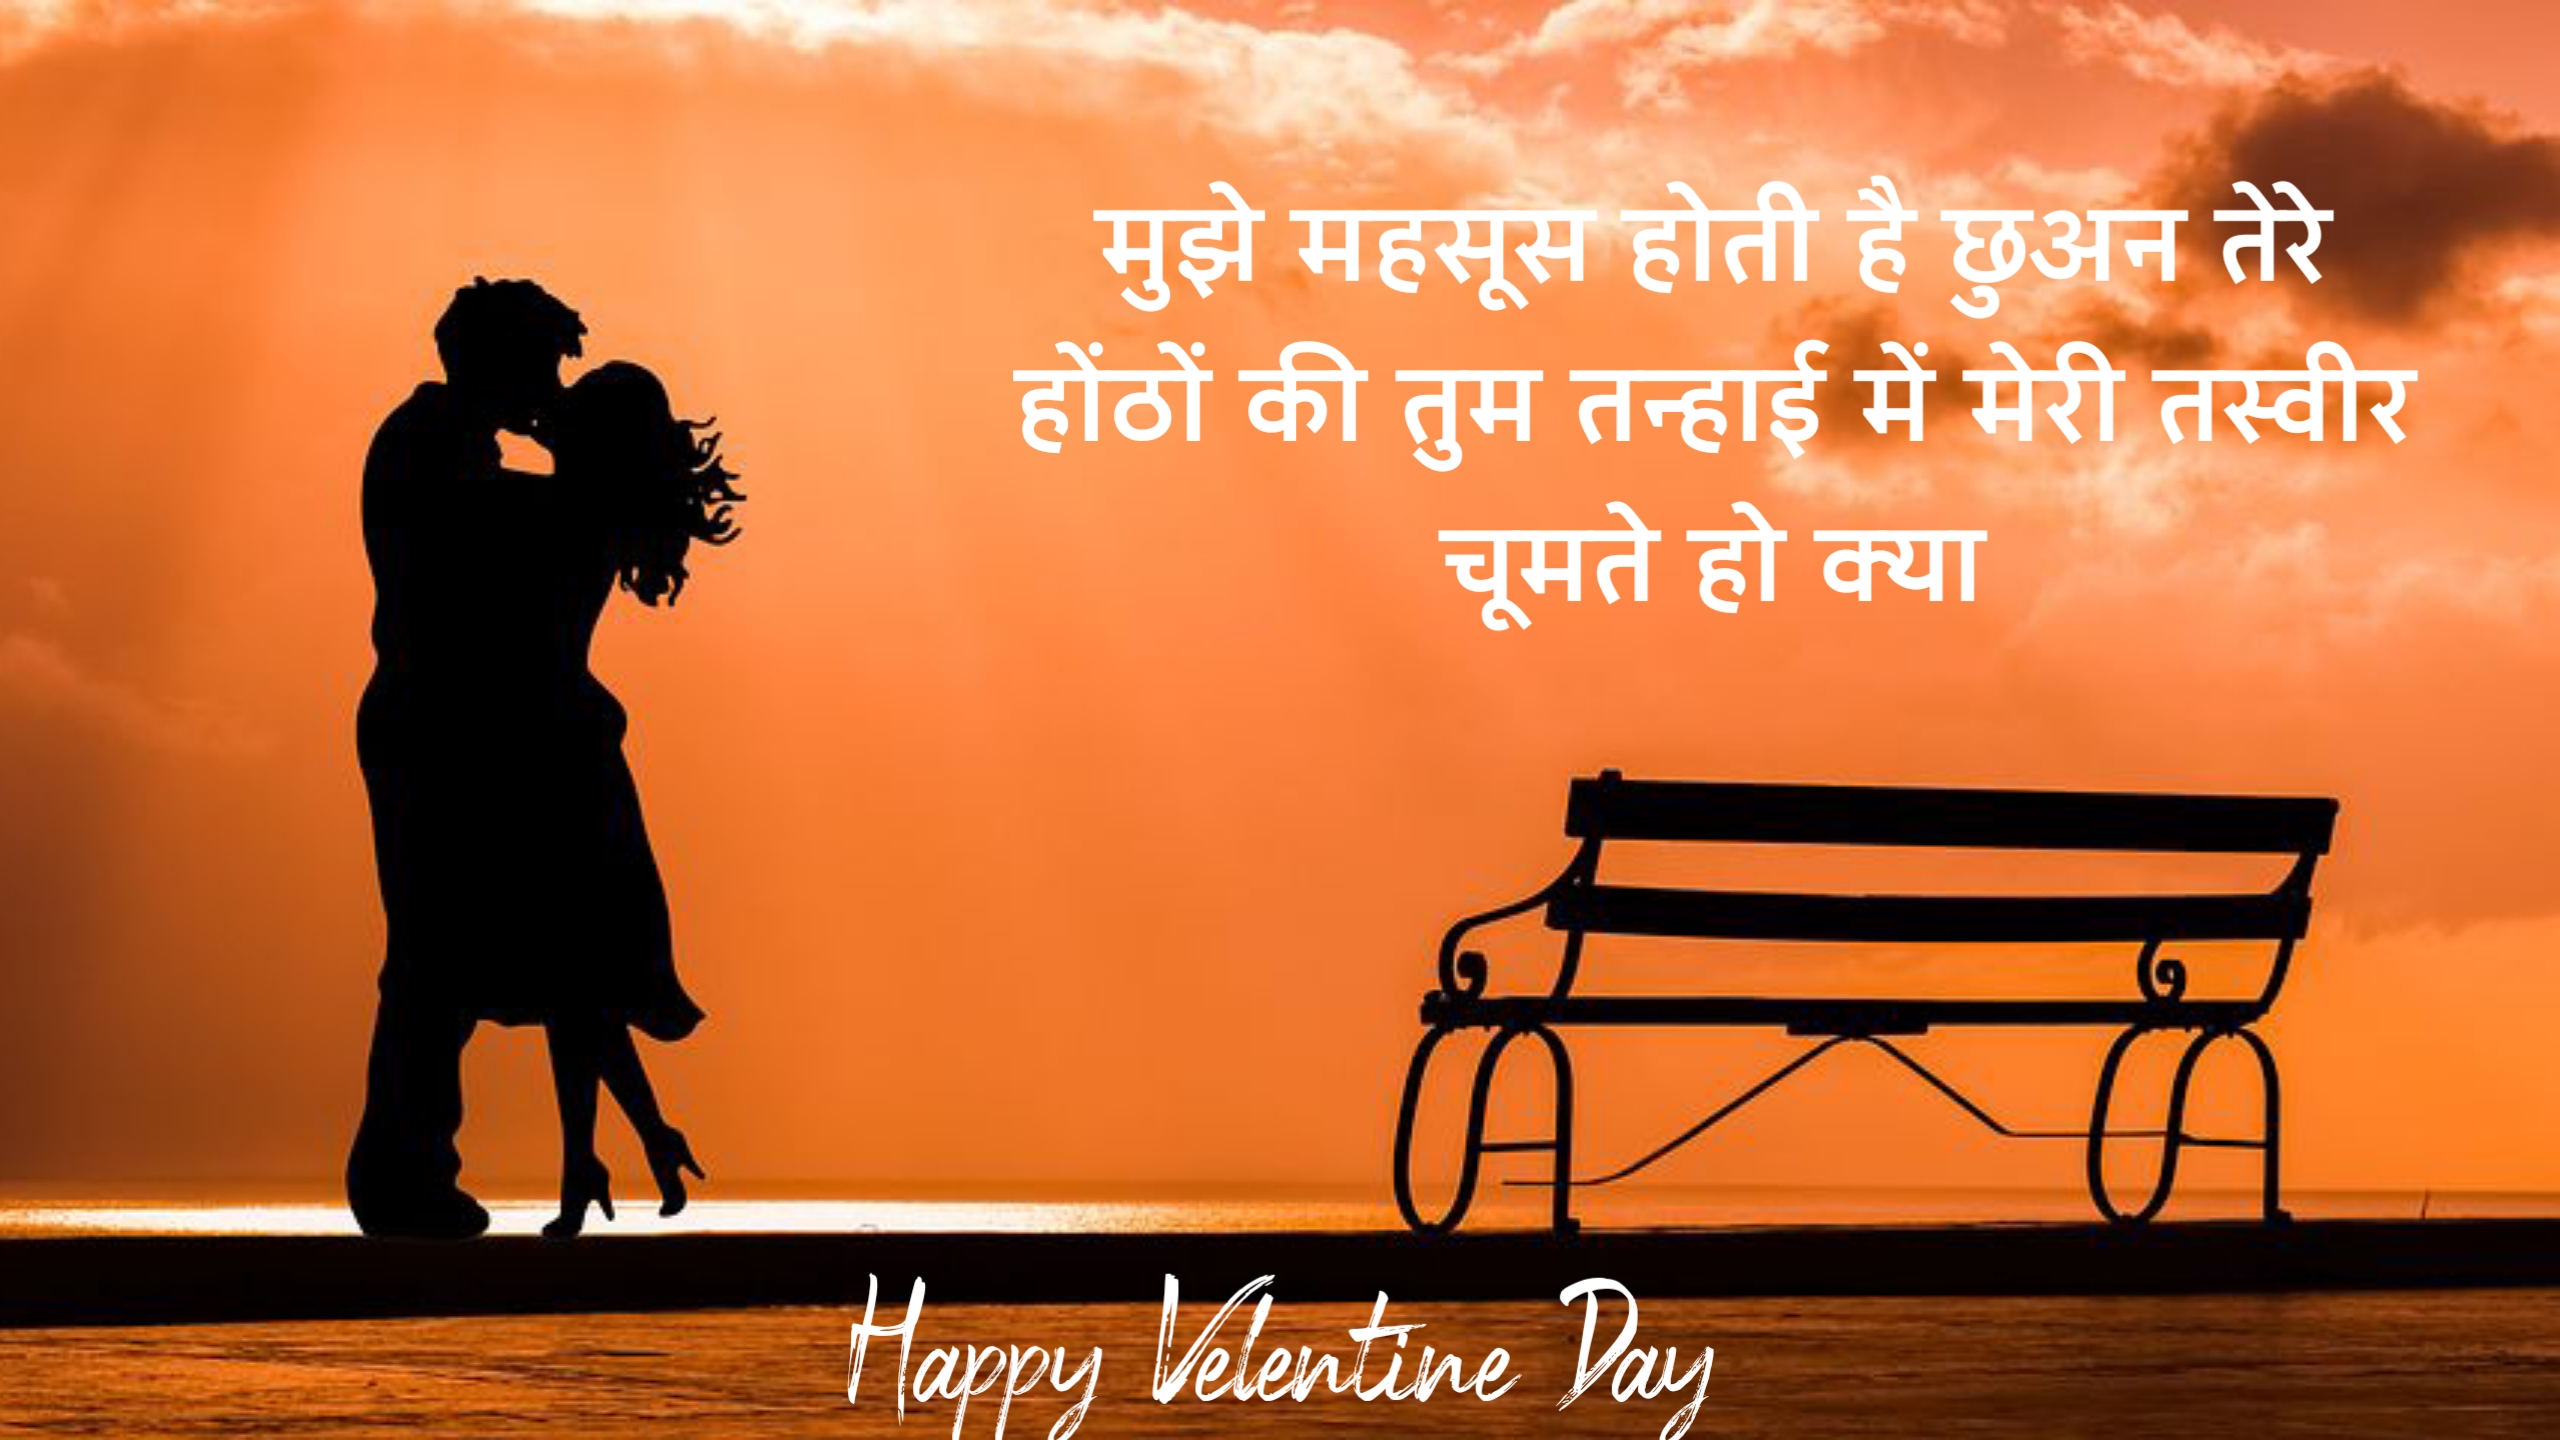 हैप्पी वेलेंटाइन डे शायरी इन हिंदी 2024, happy Valentine day shayari in Hindi 2024, Happy Valentine day shayari status quotes in Hindi 2024,Happy-Valentine-day-image-in-Hindi 2024,Happy-Valentine-day-image-2024,Happy-Valentine-day whatsapp status in hindi 2024